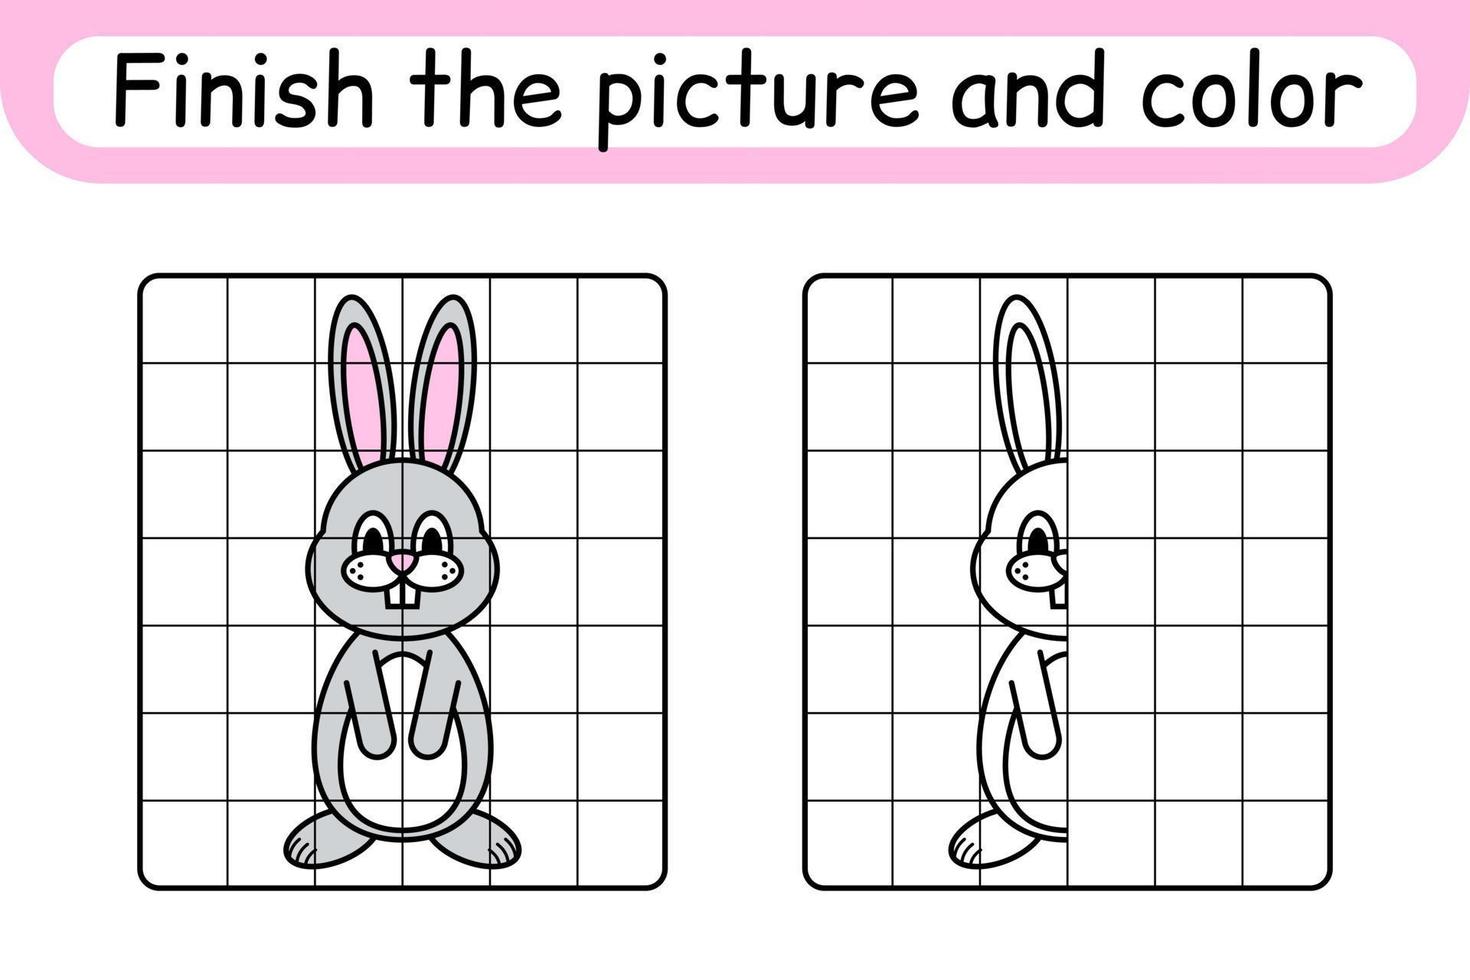 slutföra bilden kanin. kopiera bilden och färgen. avsluta bilden. målarbok. pedagogiskt ritövningsspel för barn vektor